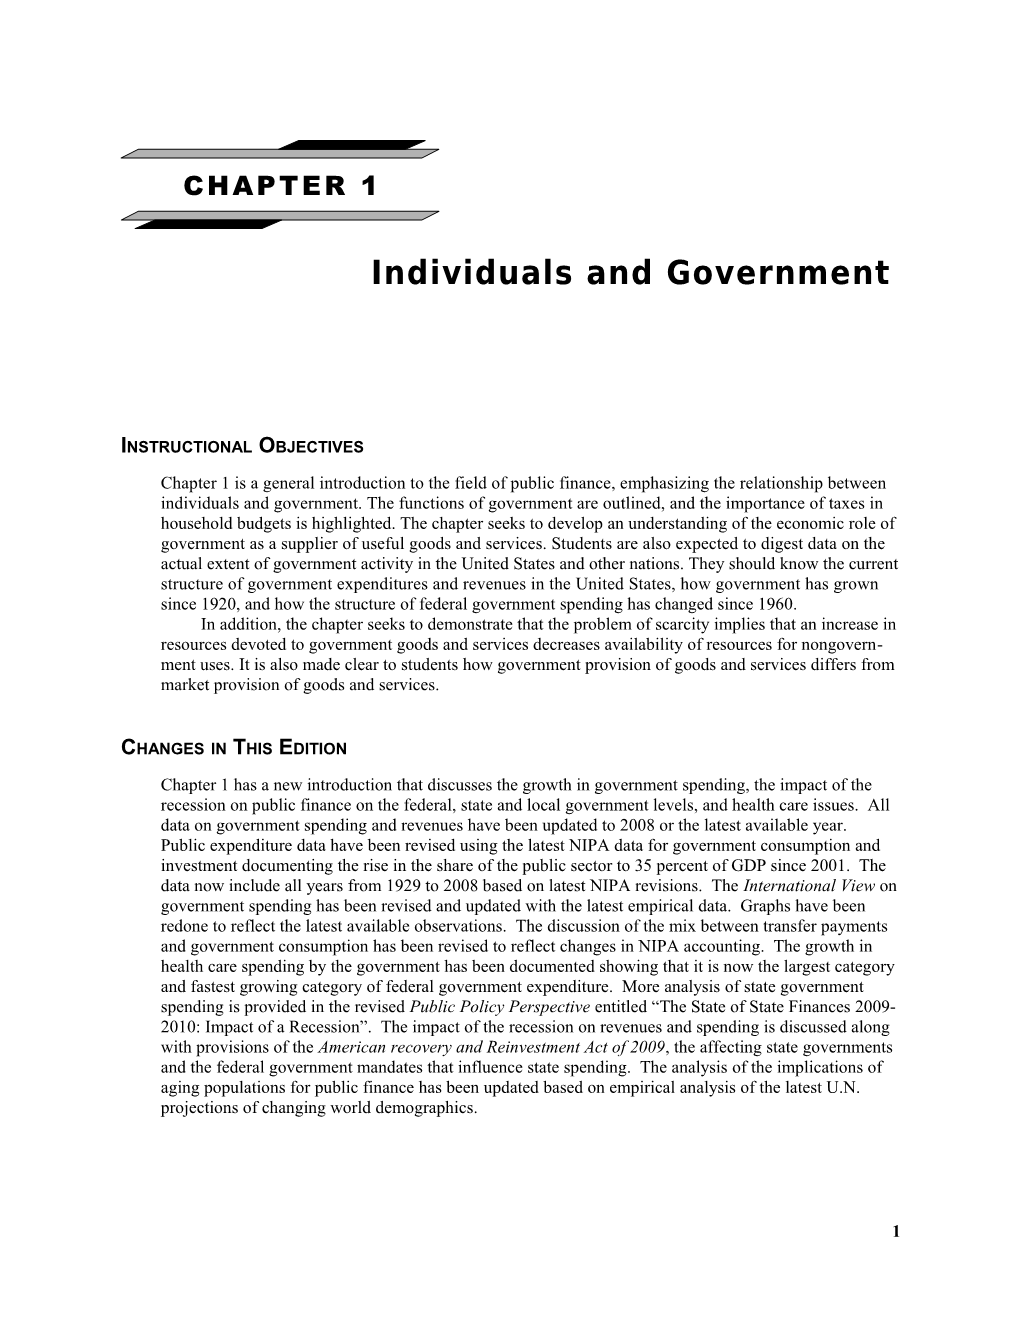 IM & TB for Public Finance (8Th Edition)